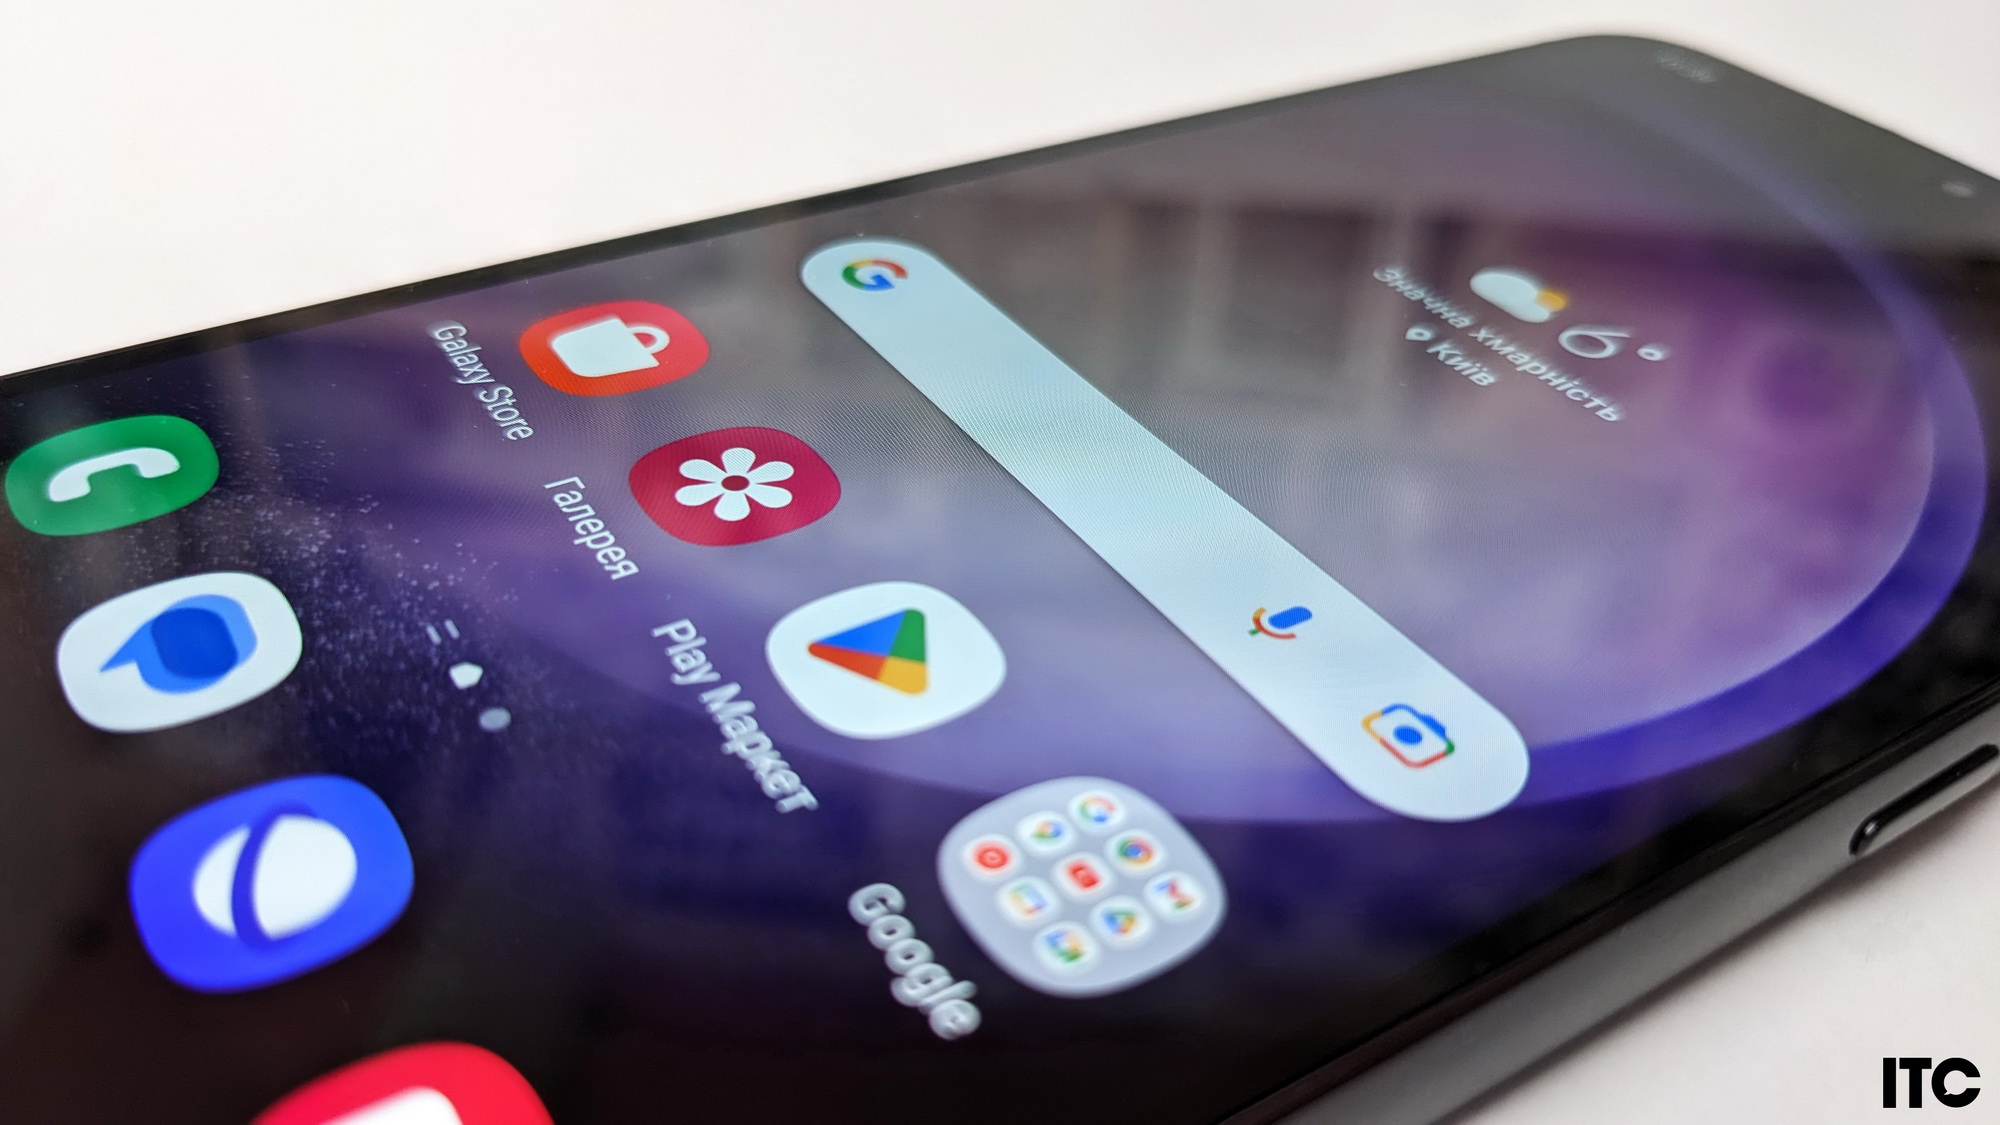 Обзор смартфона Samsung Galaxy S23: прекрасные фотовозможности, мерцание дисплея и проблемное ПО